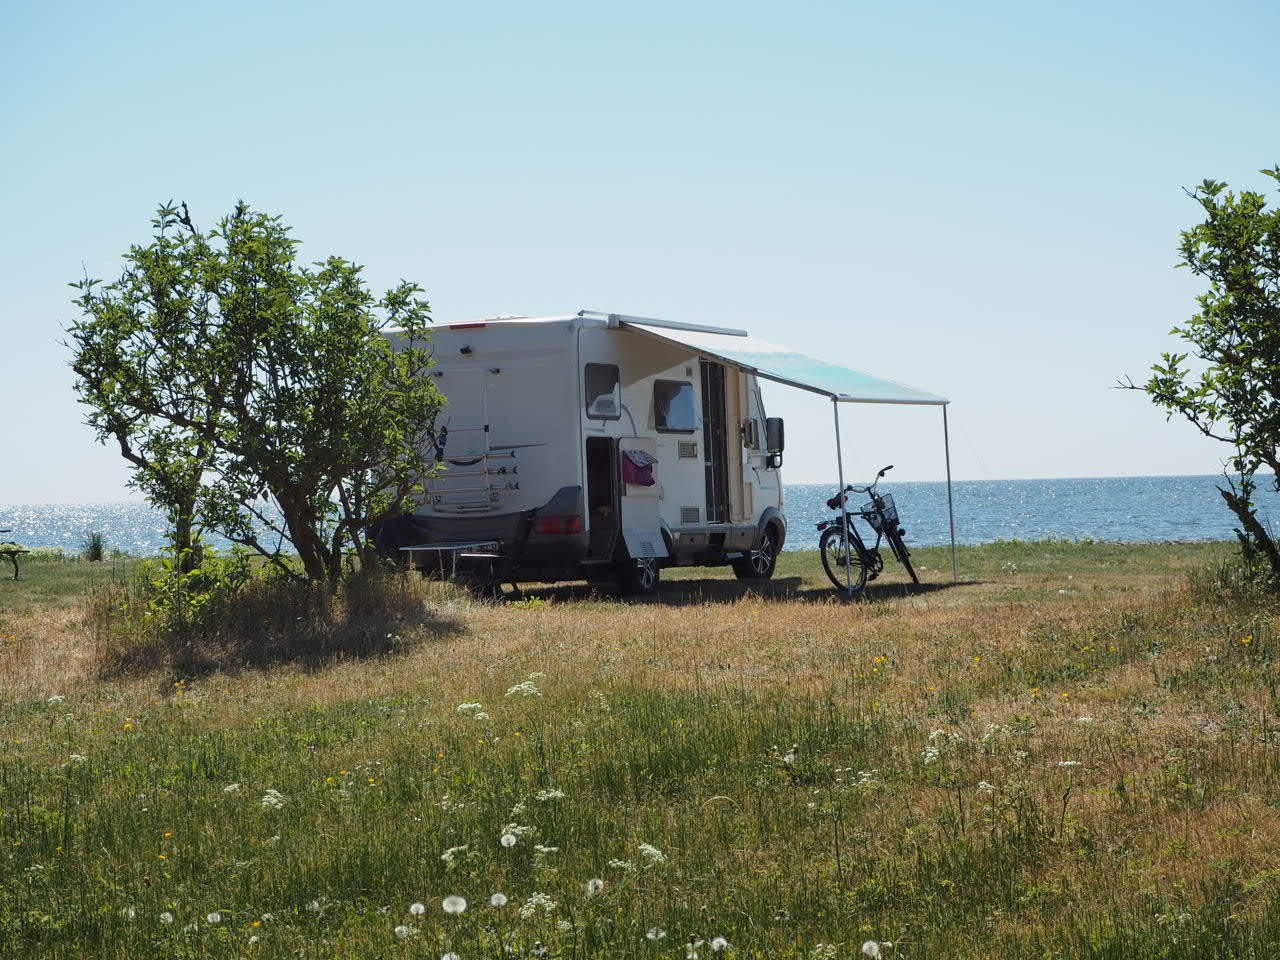 Emplacement de camping caravane/camping-car/tente sans électricité